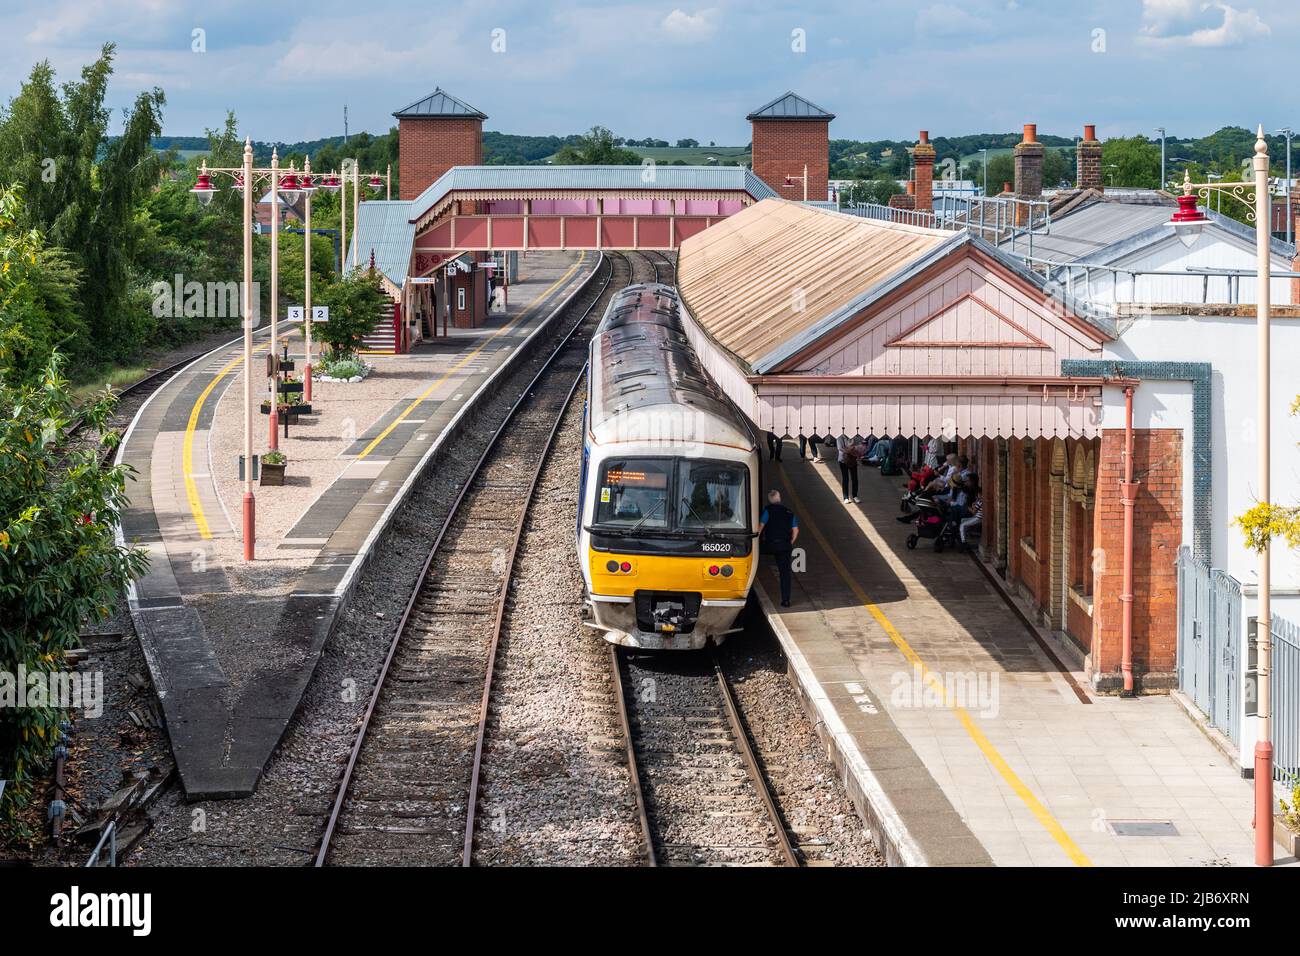 Estación de ferrocarril de Stratford-upon-Avon, Stratford-upon-Avon, Warwickshire, Reino Unido. Foto de stock